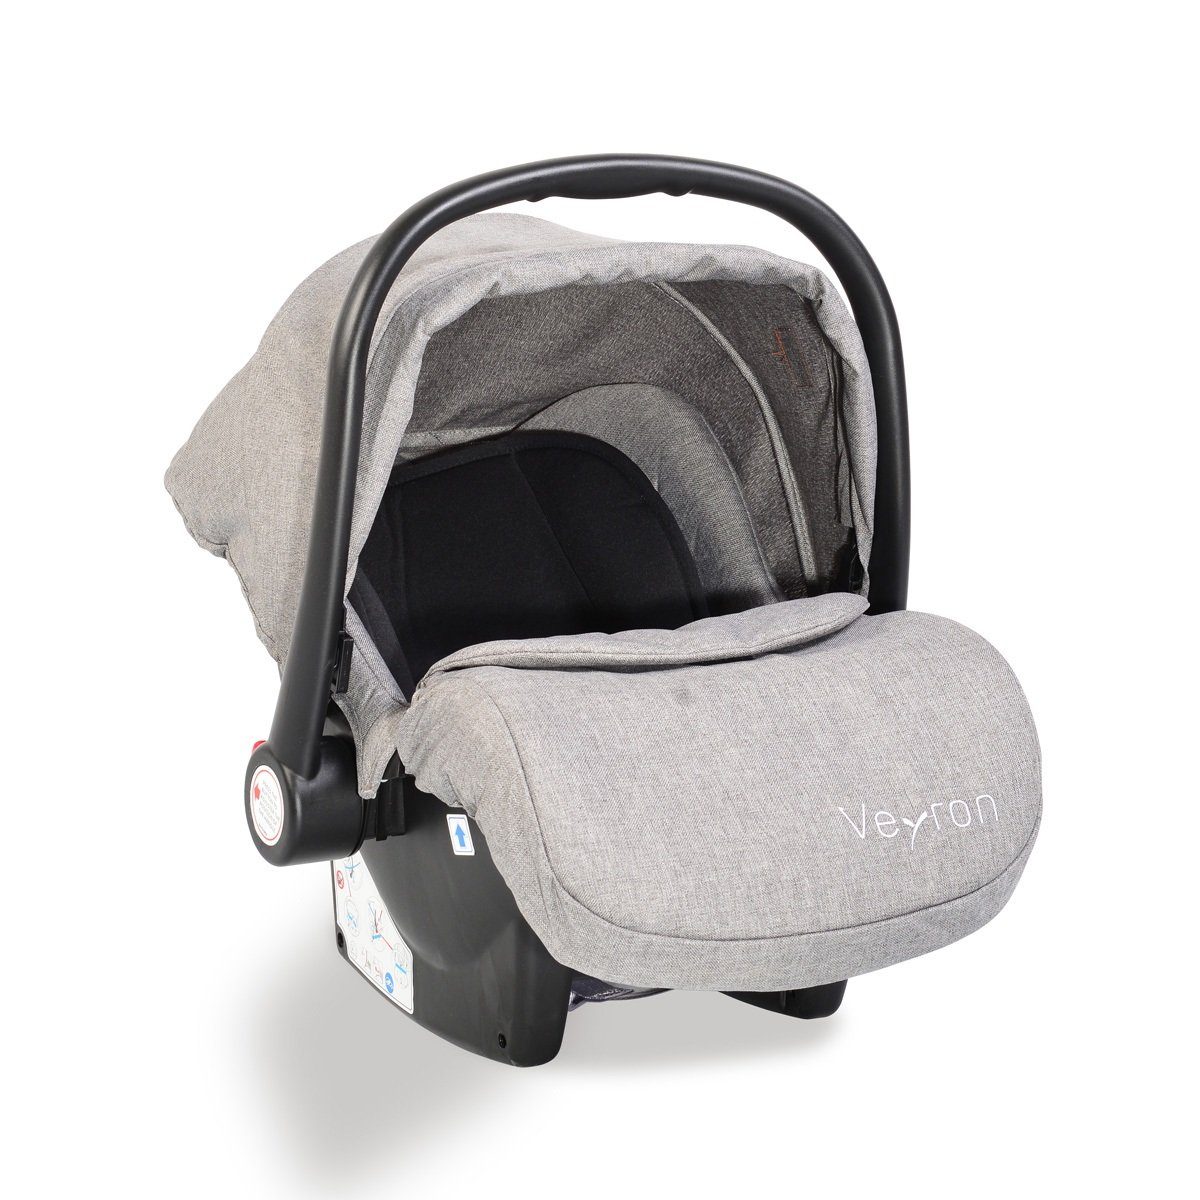 kg) Babyschale Kindersitz, bis: kg, Moni Veyron hellgrau 0+, Sonnendach, Adapter Gruppe -13 13 (0 Babyschale